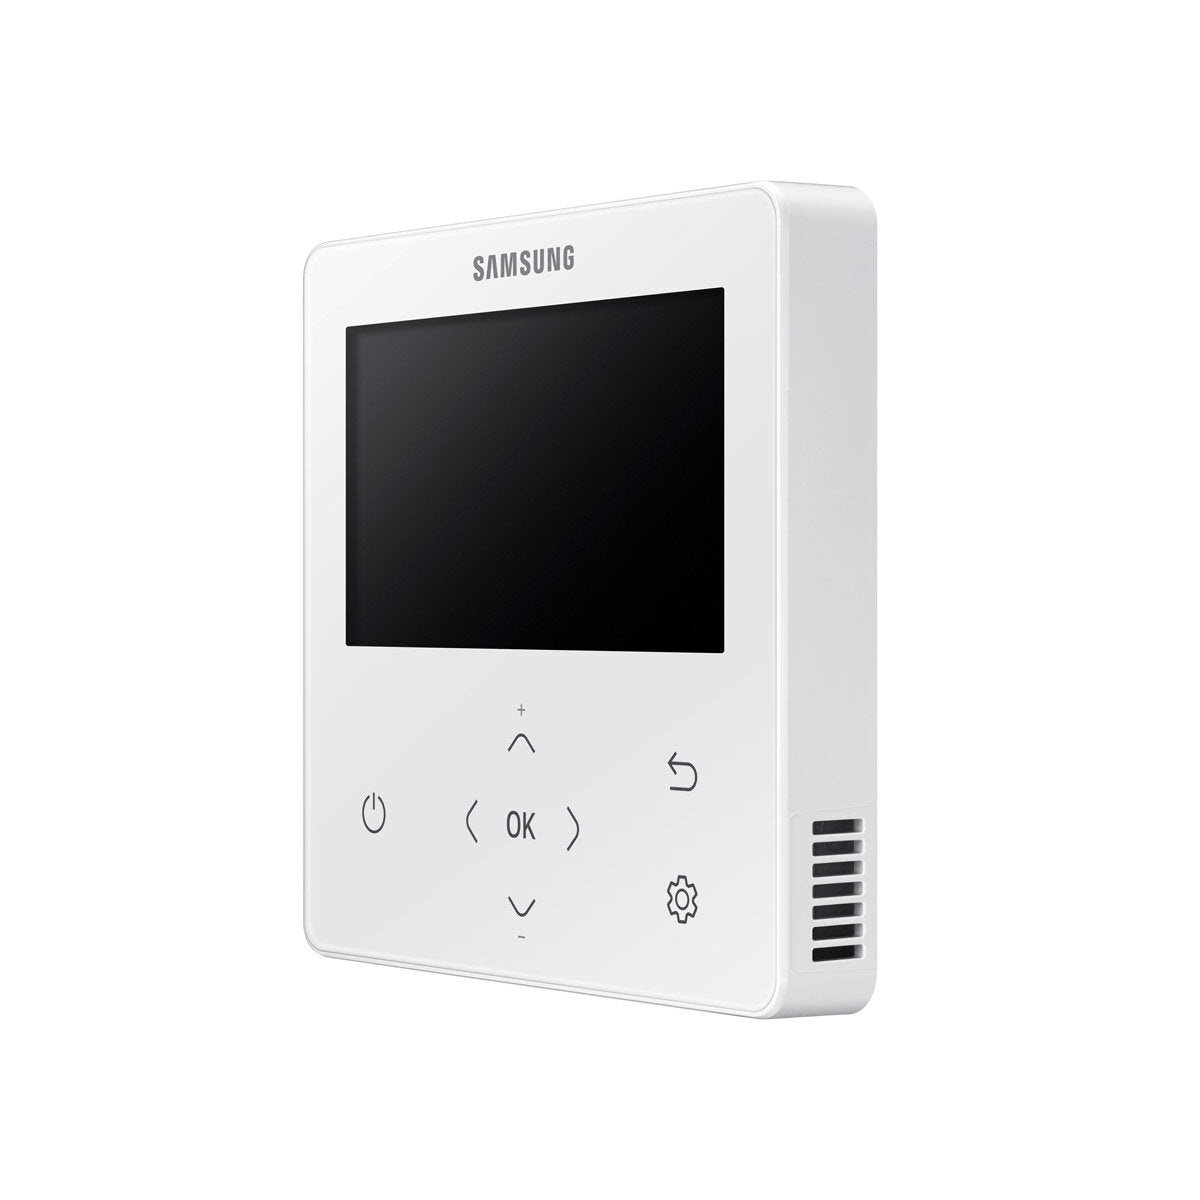 Samsung Klimagerät Windfree 4-fach Pentasplit 7000 + 9000 + 9000 + 9000 + 9000 BTU Inverter A++ Außengerät 10,0 kW